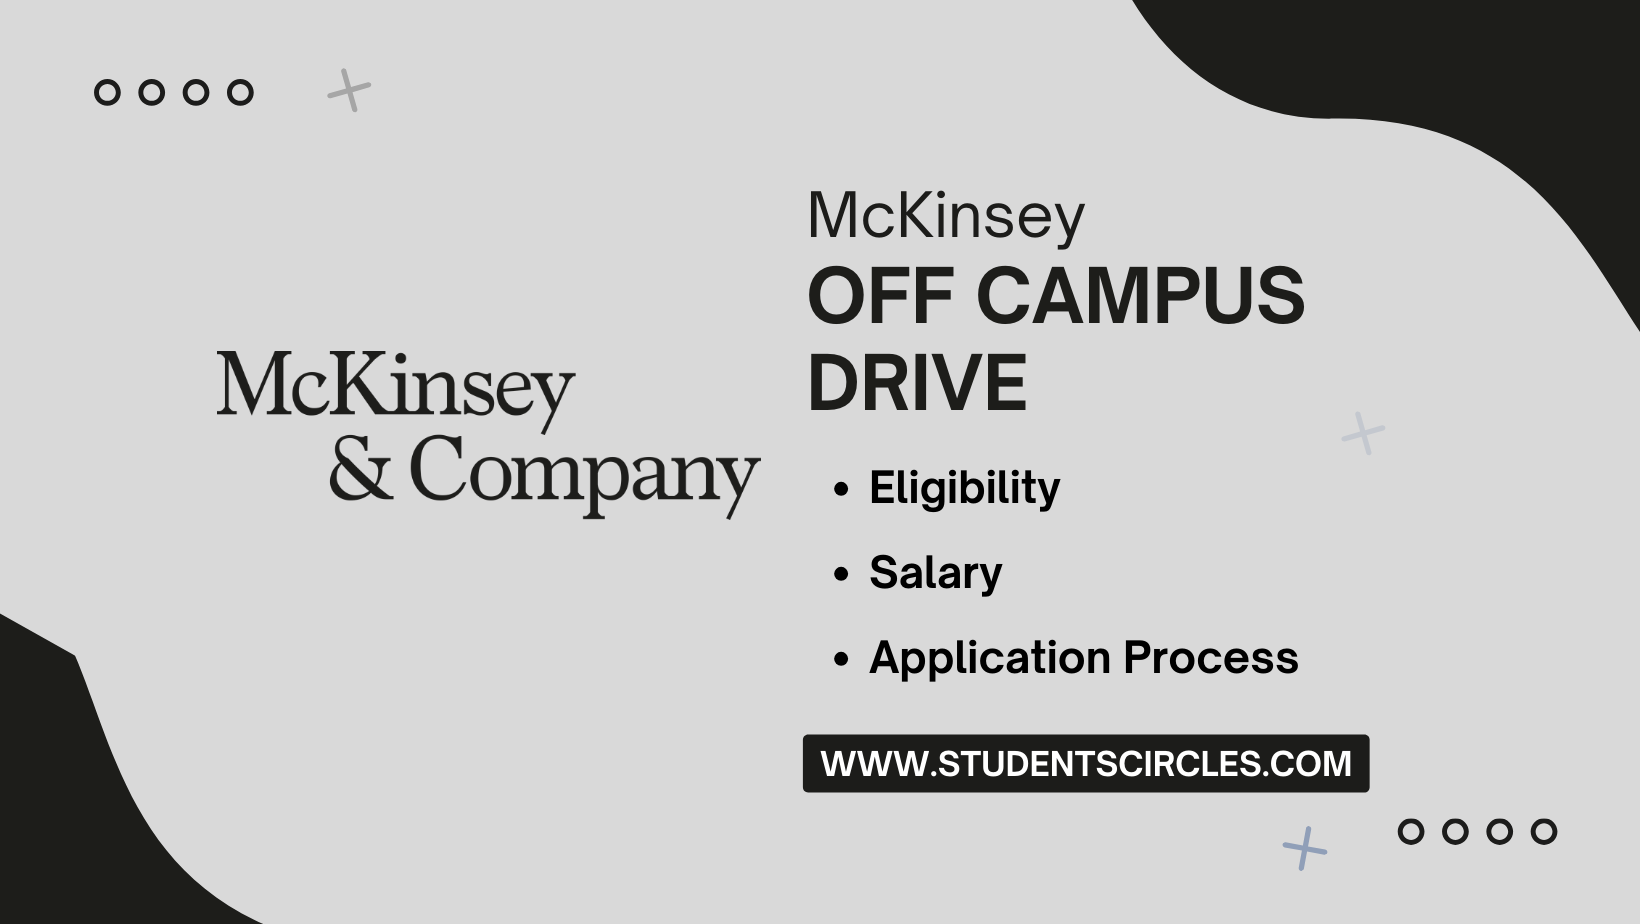 McKinsey Off Campus Drive